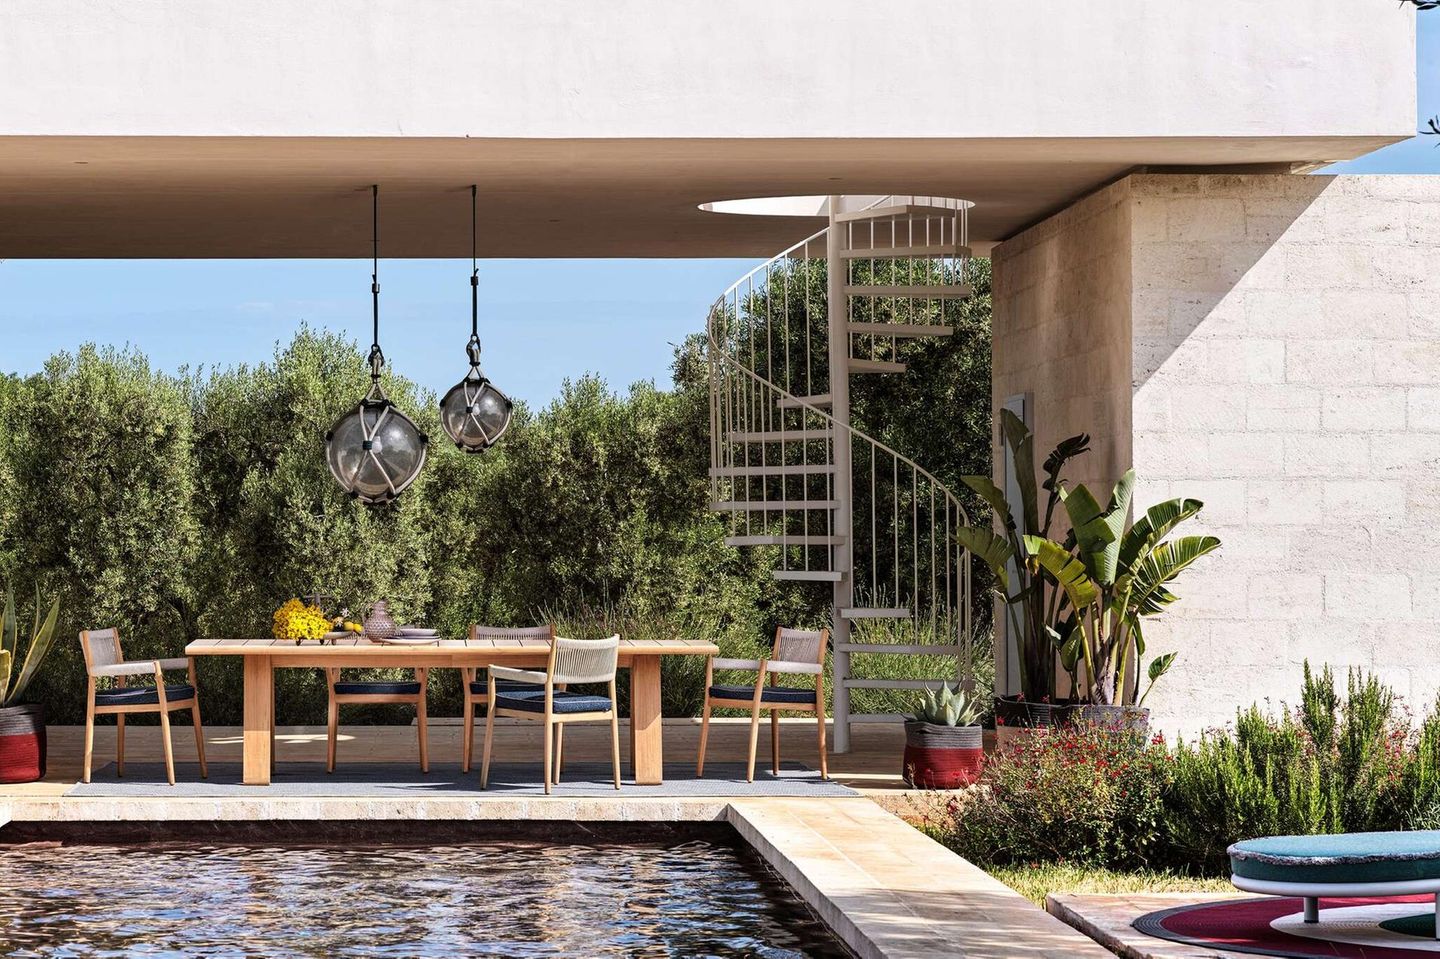 Gartentisch "Dine Out" von Cassina auf einer überdachten Terrasse mit einem Pool im Vordergrund